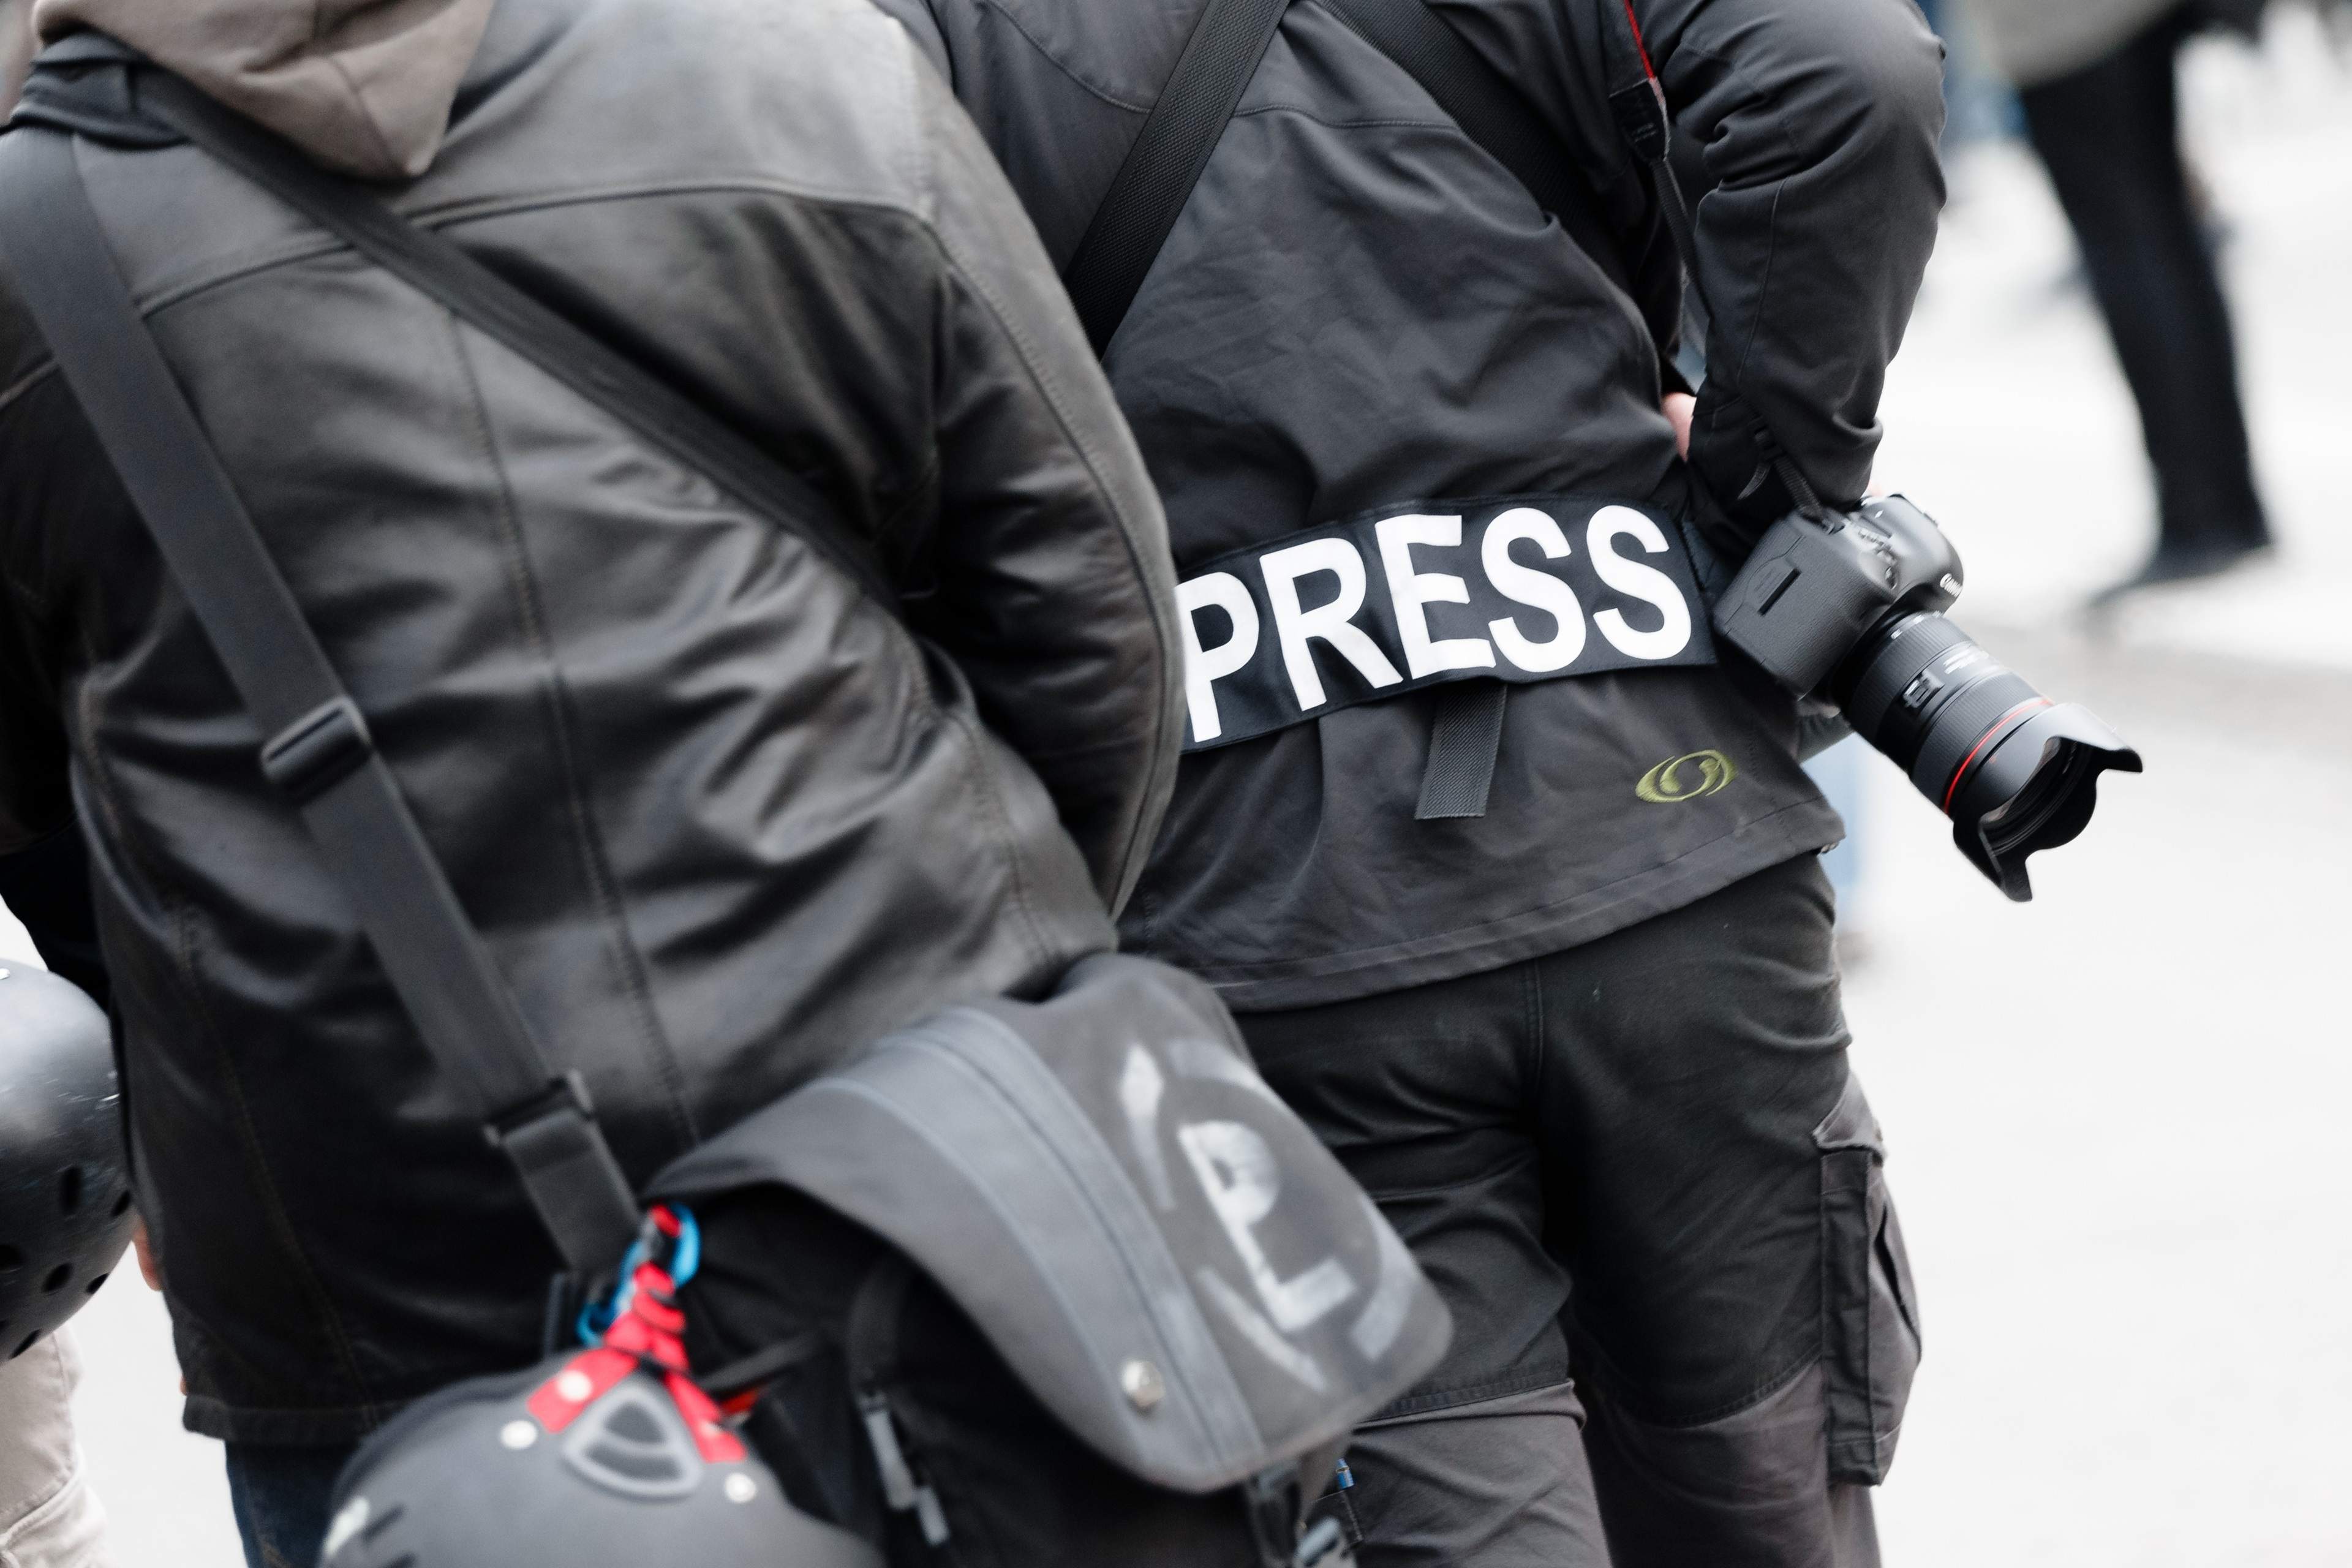 Alerta de Reporters sense Fronteres: els periodistes pateixen cada cop més pressions polítiques